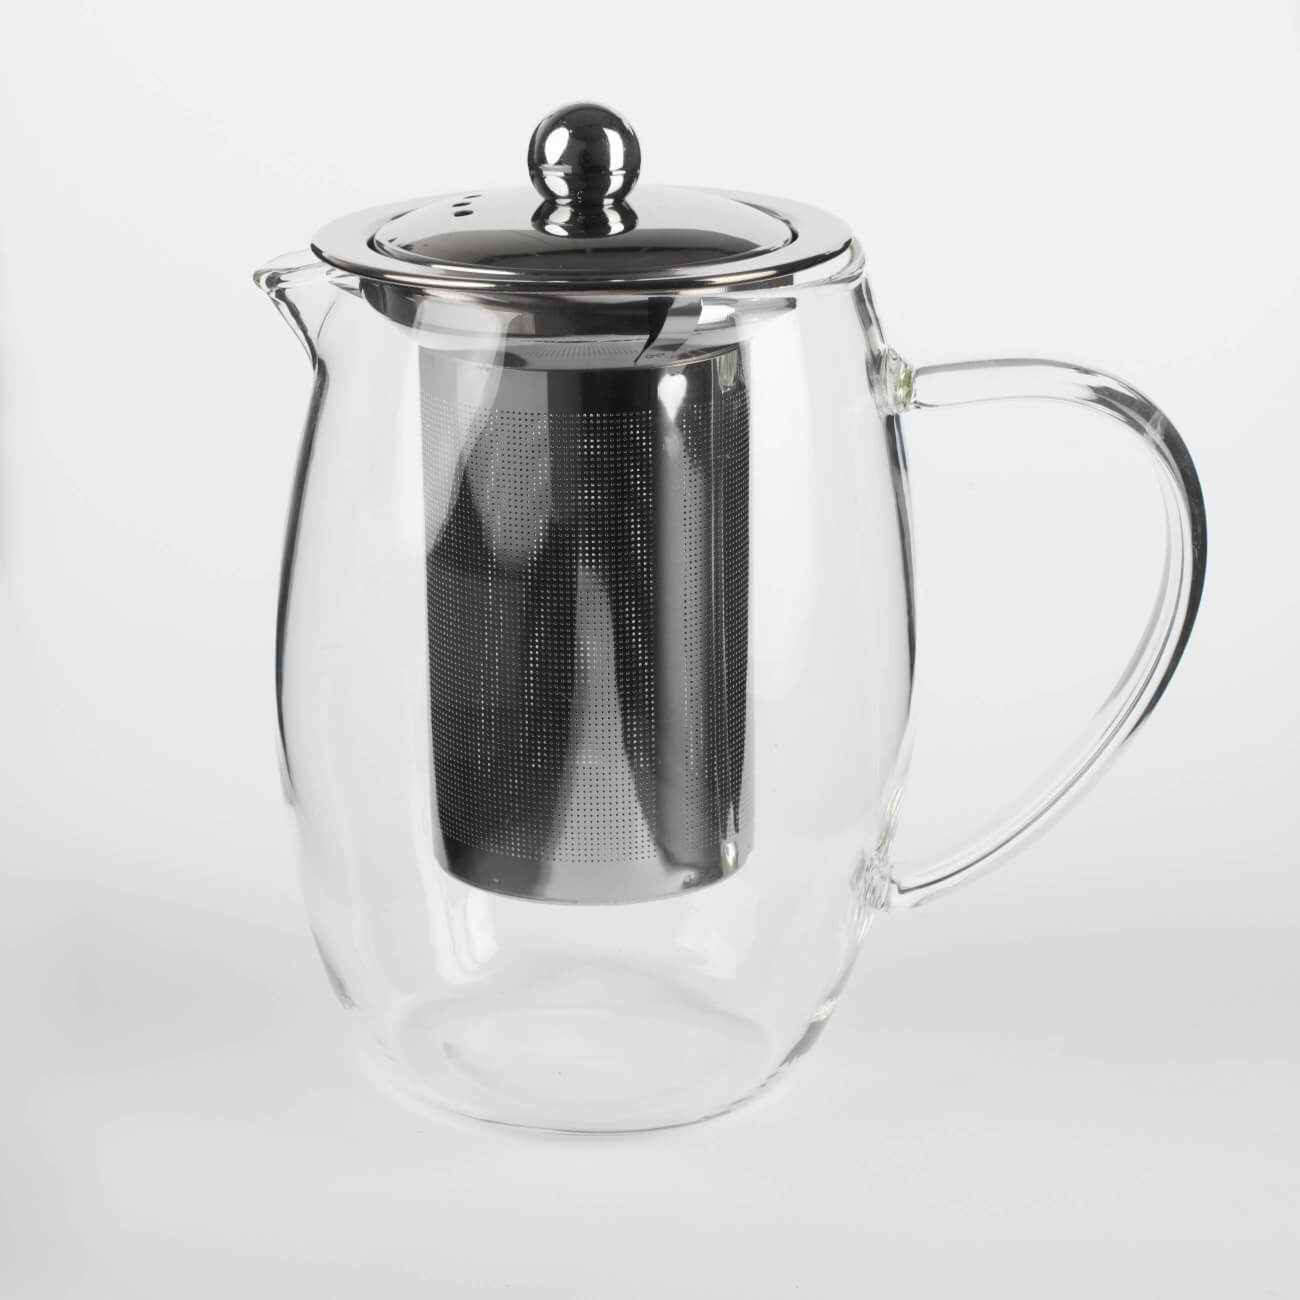 Чайник заварочный, 780 мл, стекло Б/сталь, Classic kuchenland чайник заварочный 650 мл на подставке стекло б пробка clear